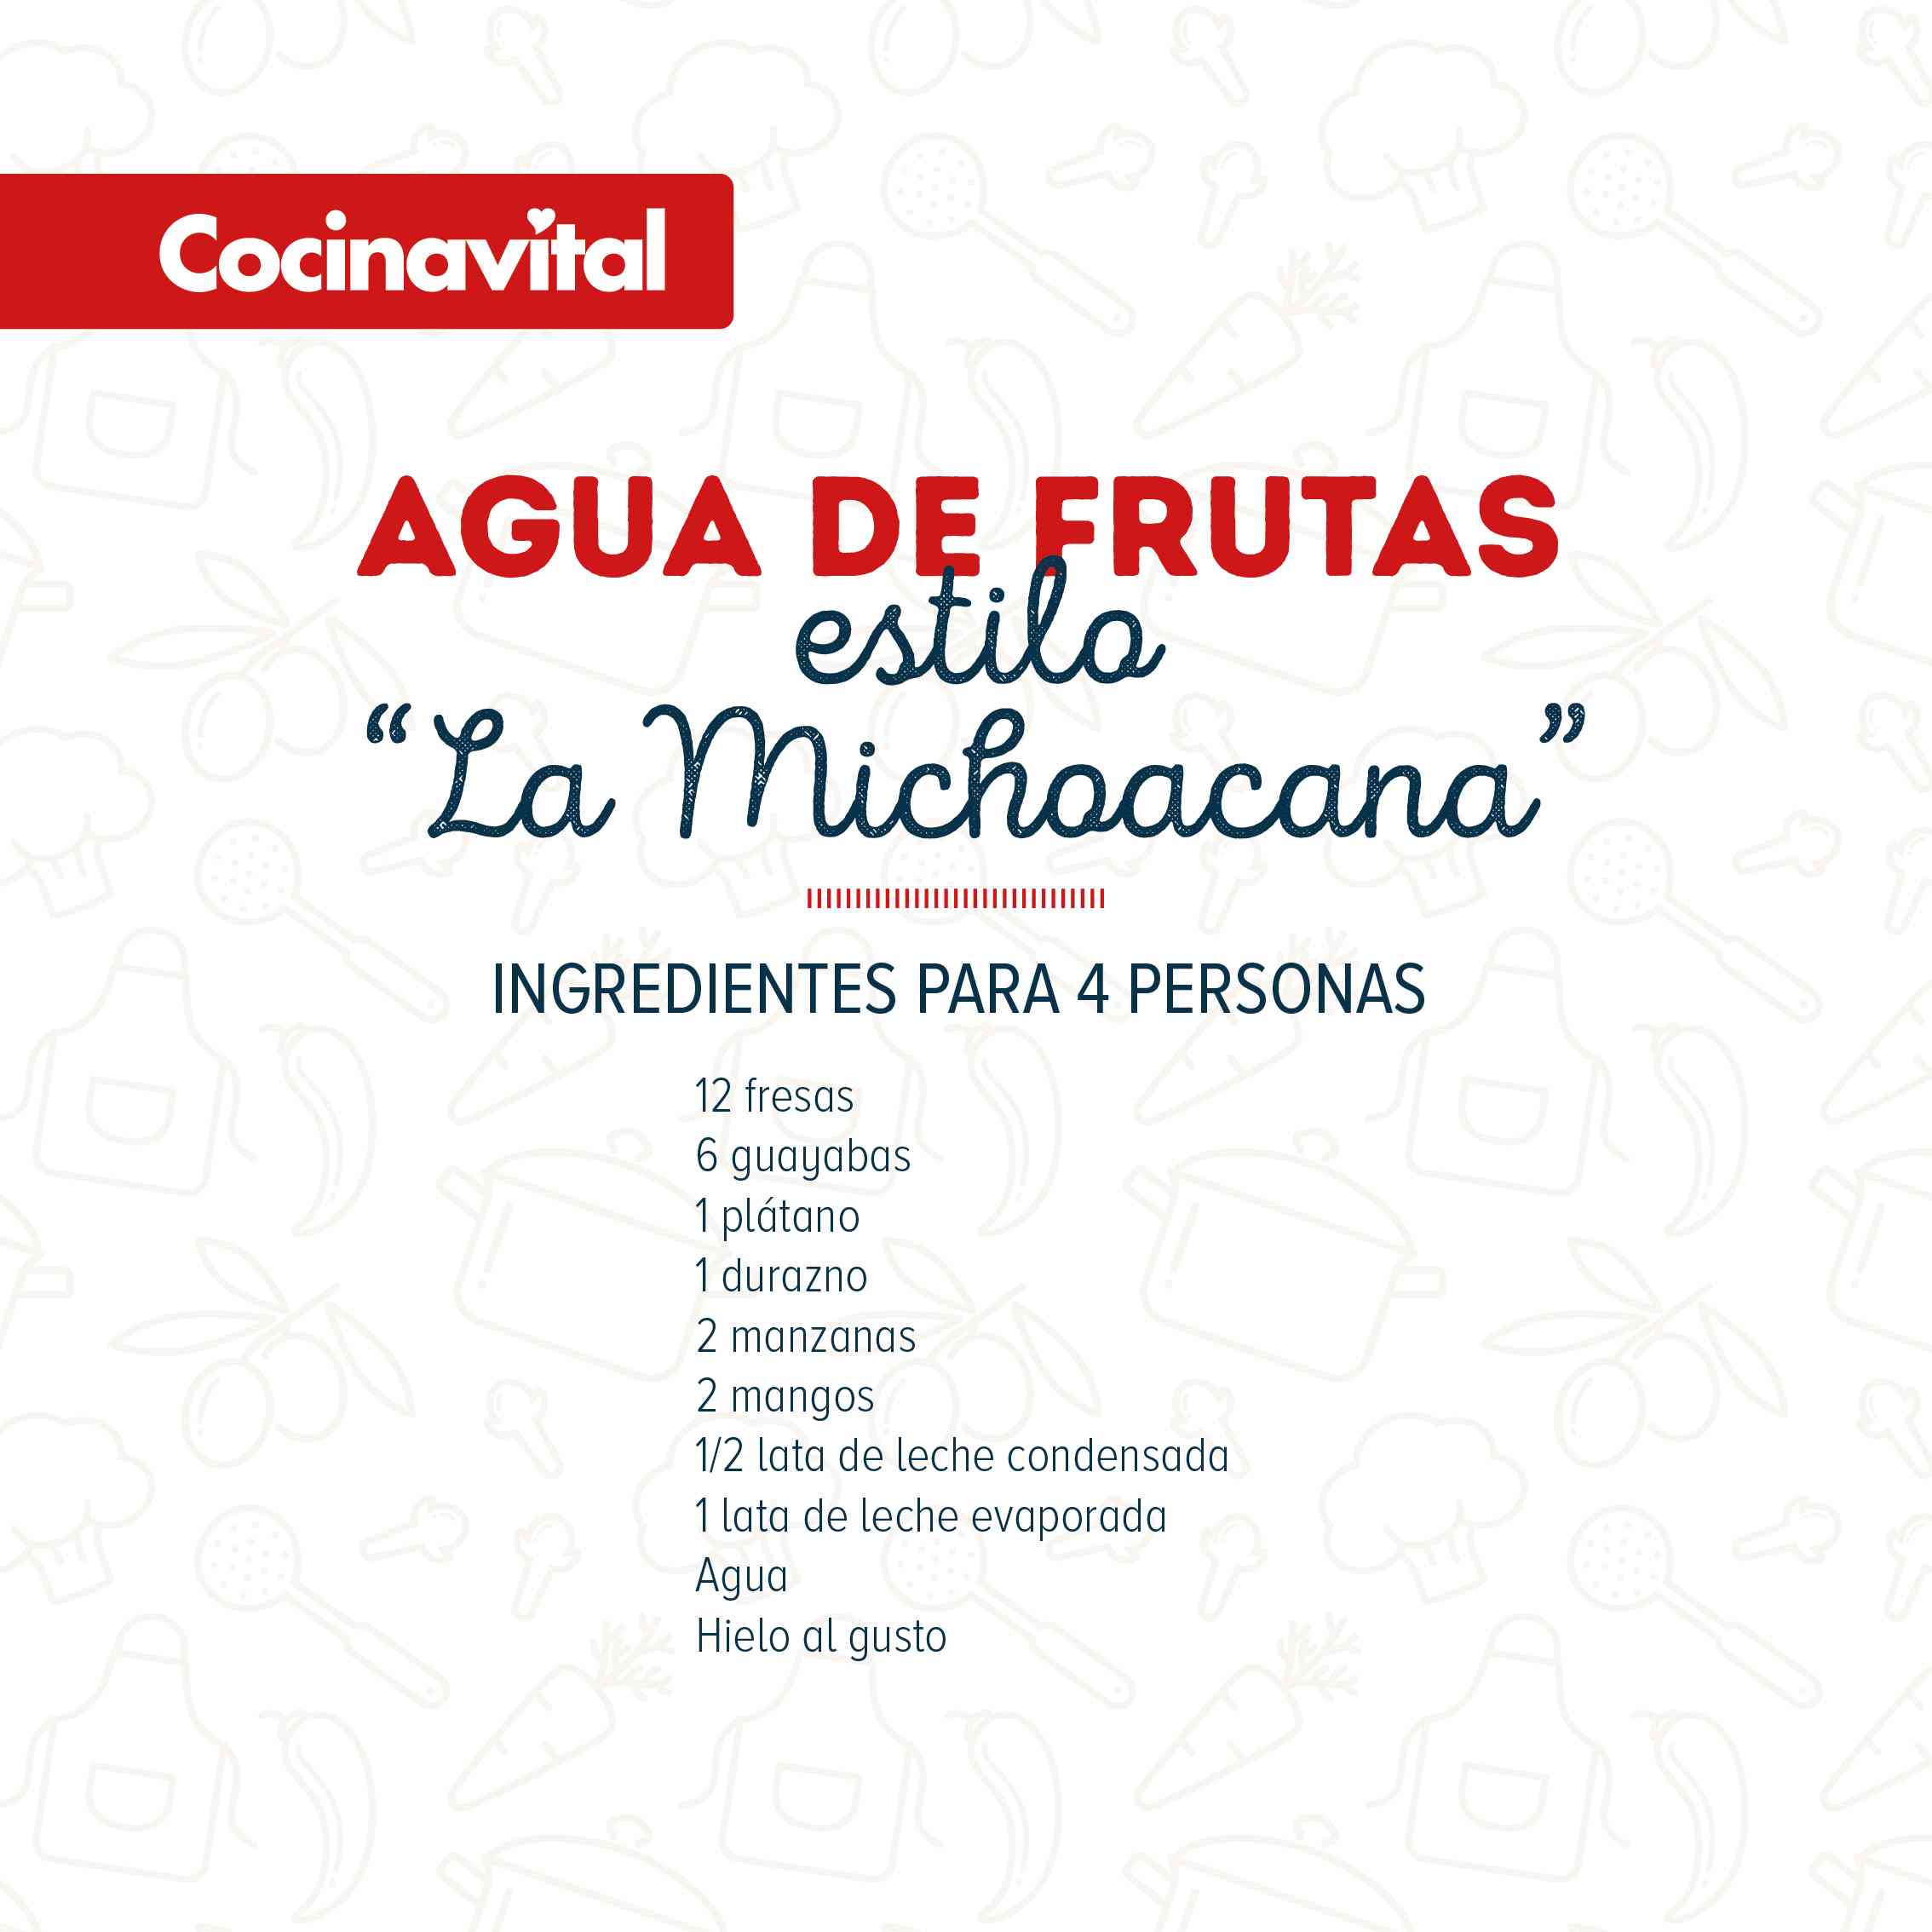 Ingredientes agua de frutas estilo "La Michoacana"